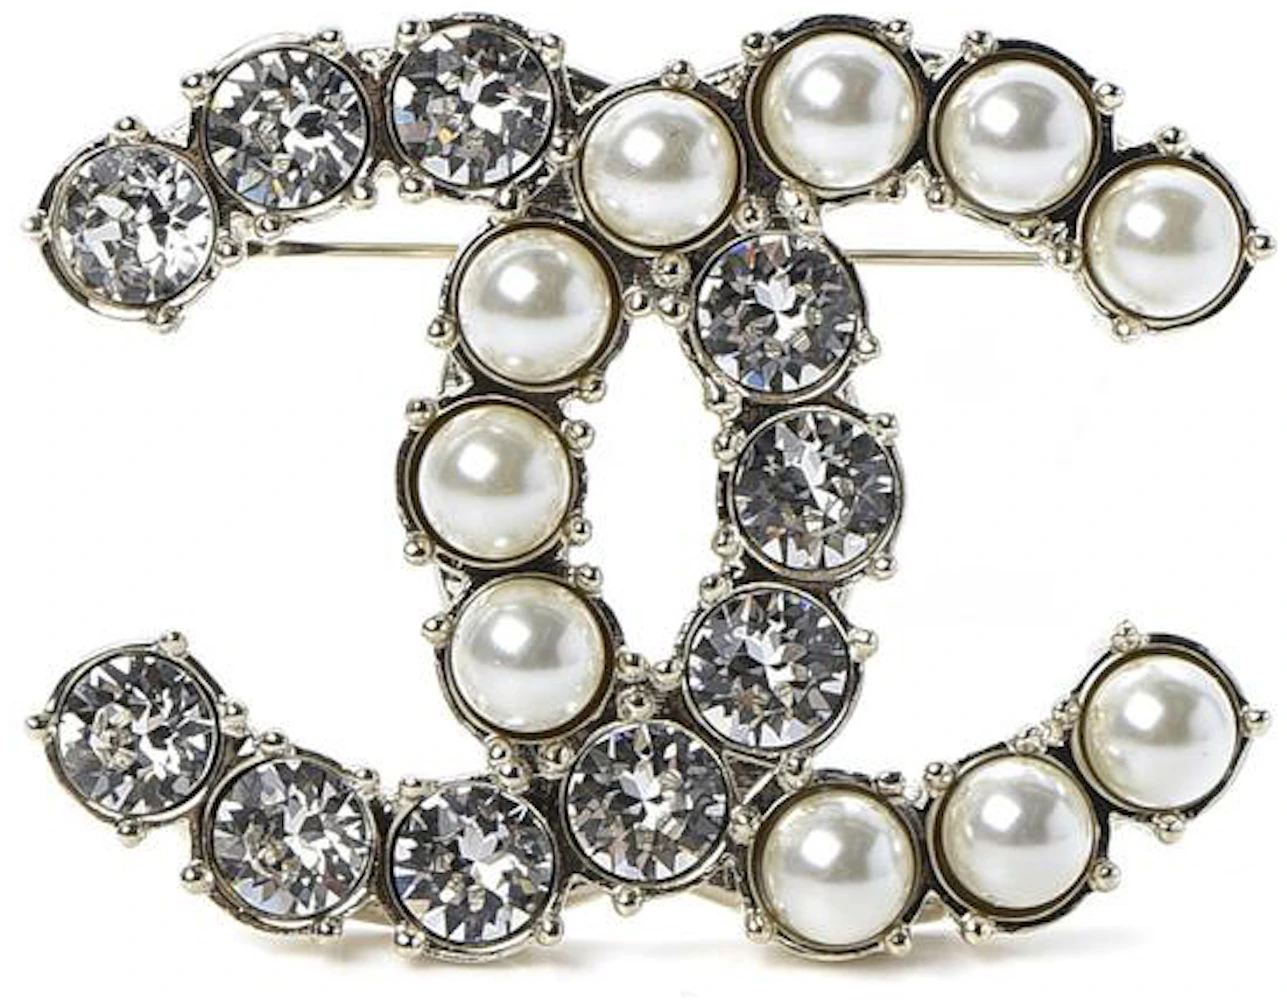 Chanel Brooch Club!  Chanel brooch, Chanel jewelry, Chanel pins